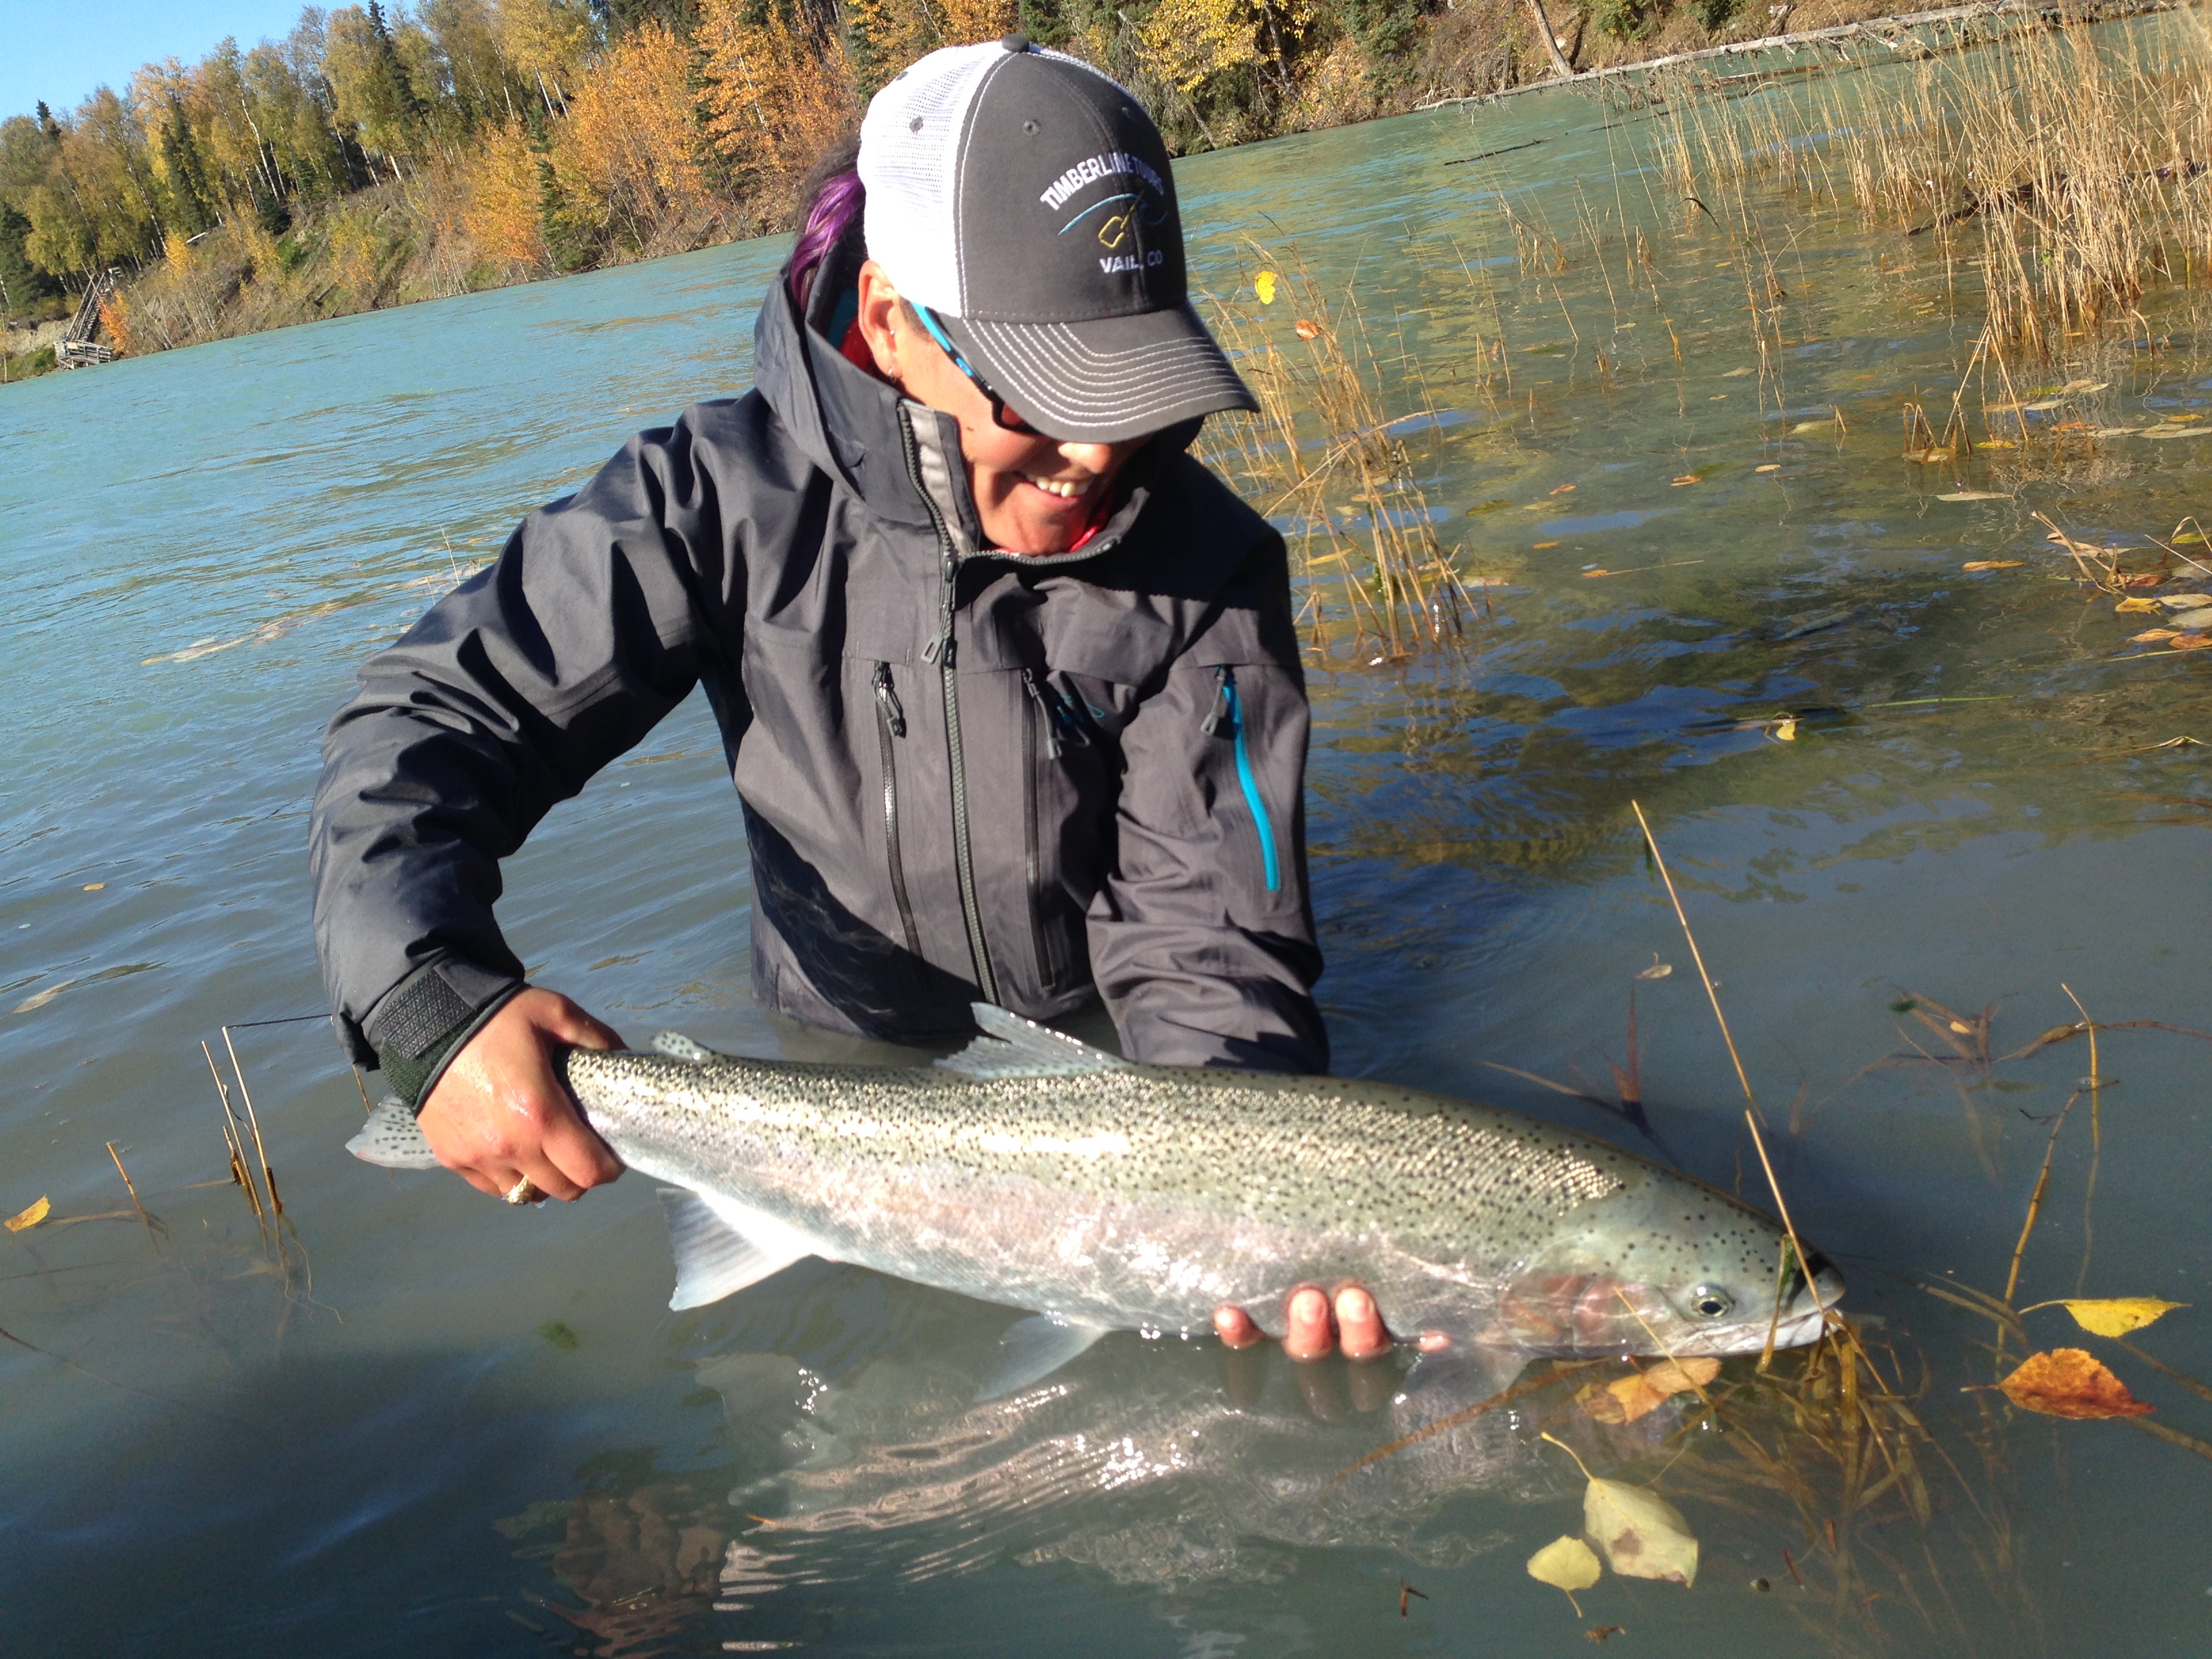 Angler releasing an Alaska Steelhead